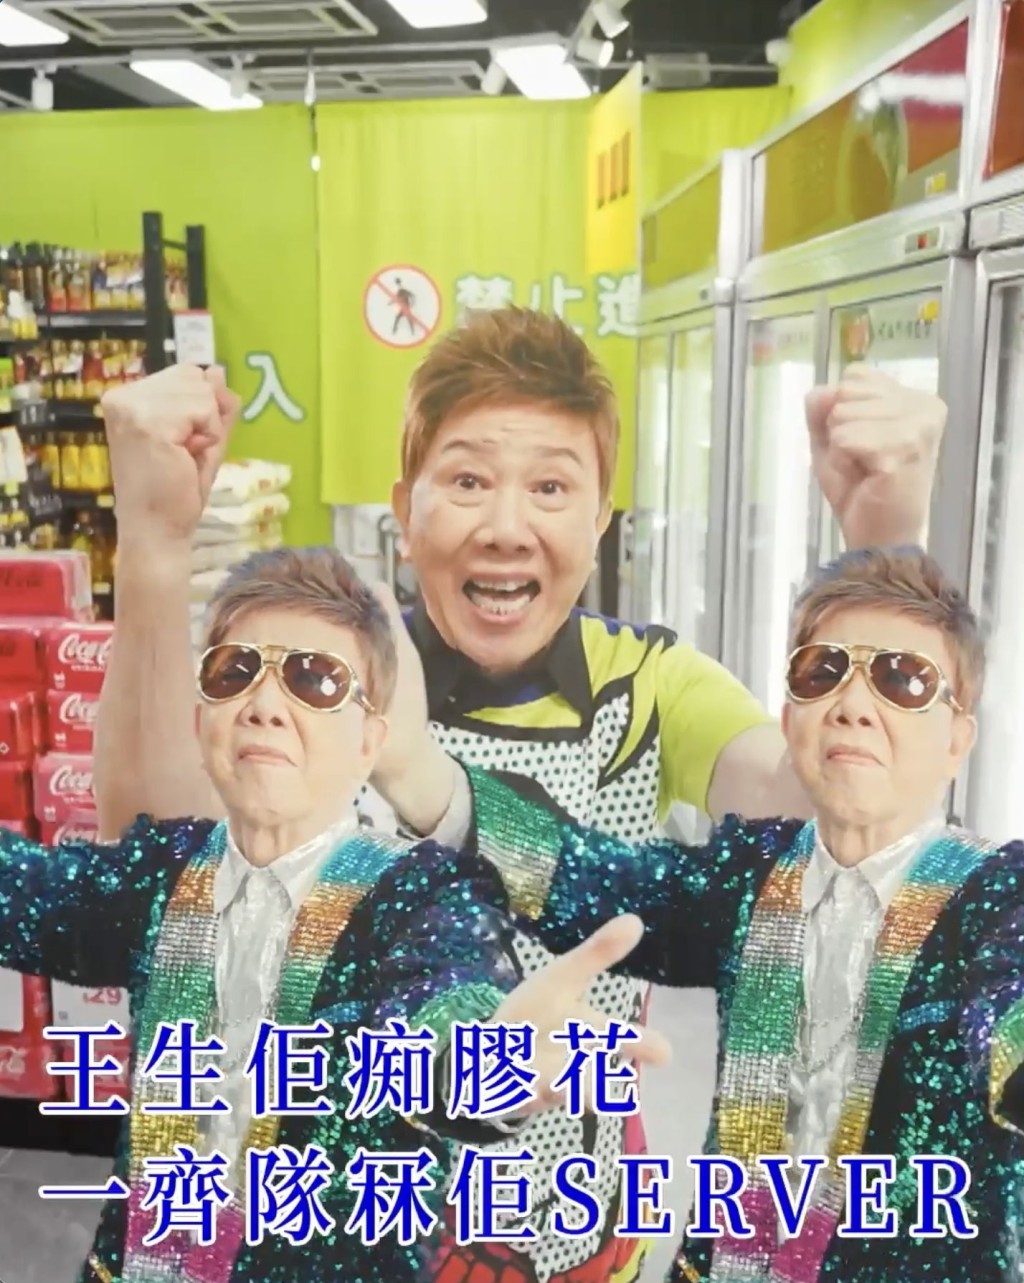 早前尹光为网上购物平台改词唱《少理阿爸》一样好受欢迎。